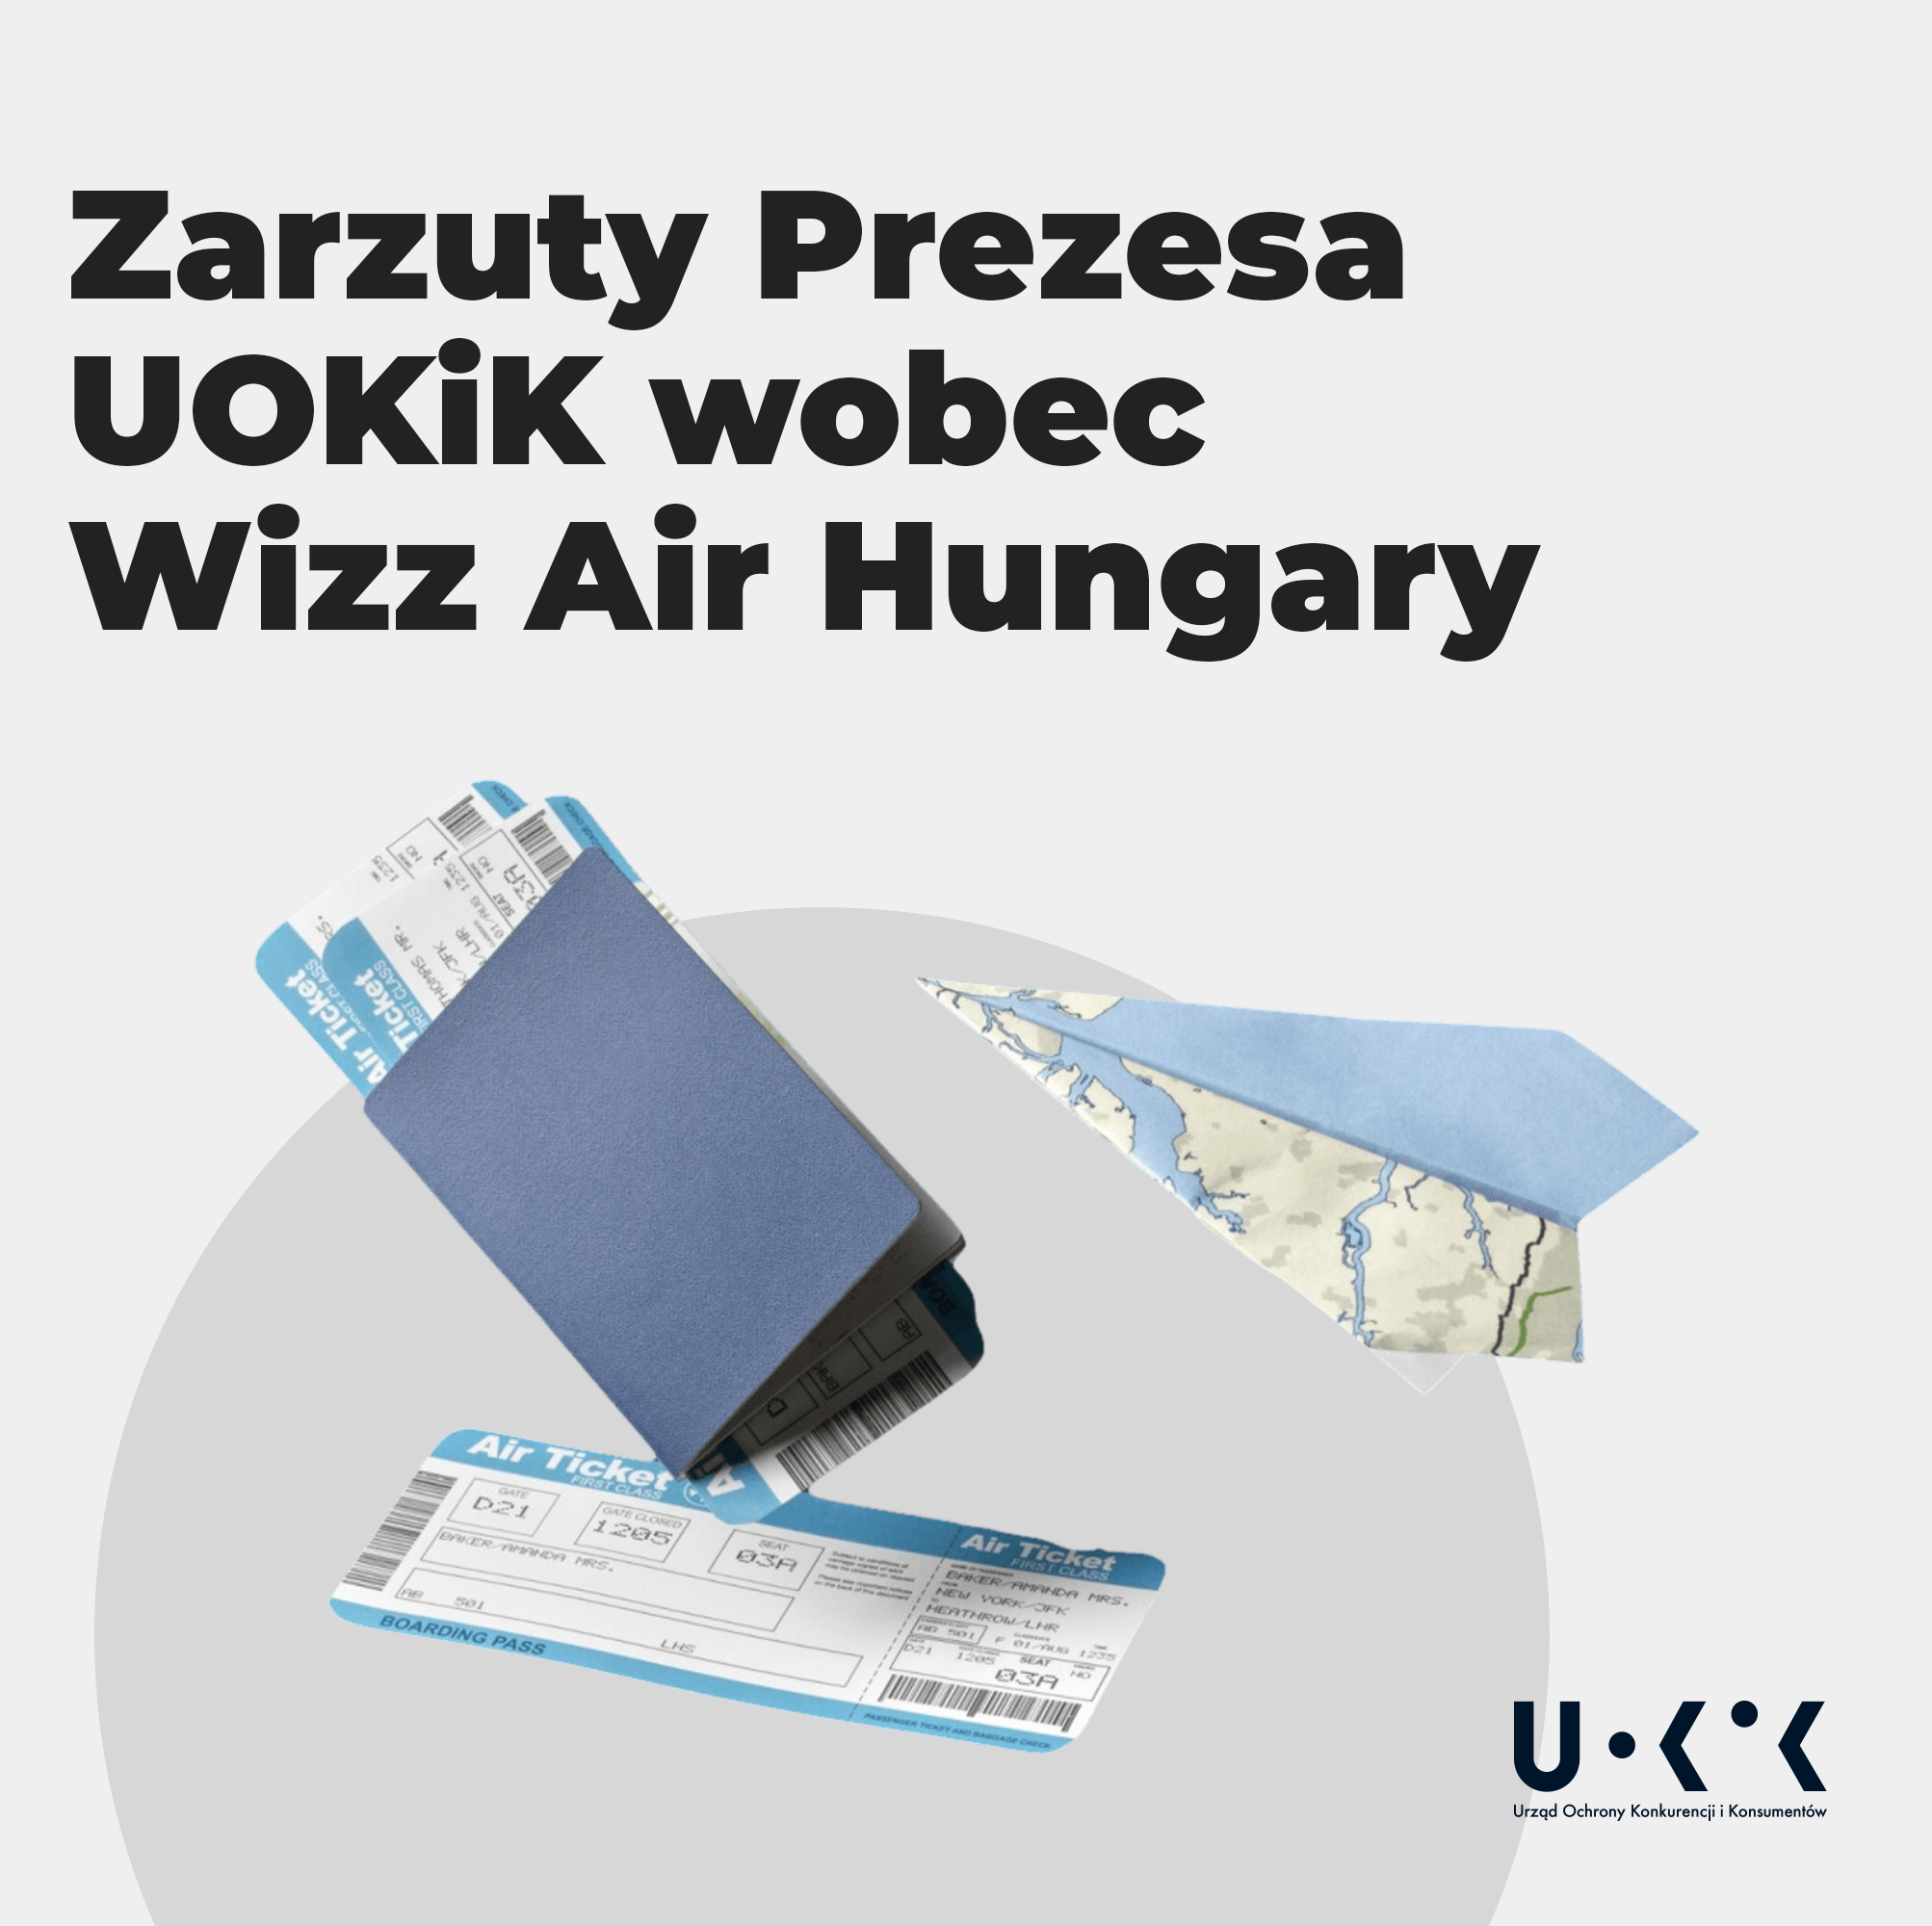 Zarzuty Prezesa UOKiK wobec Wizz Air Hungary